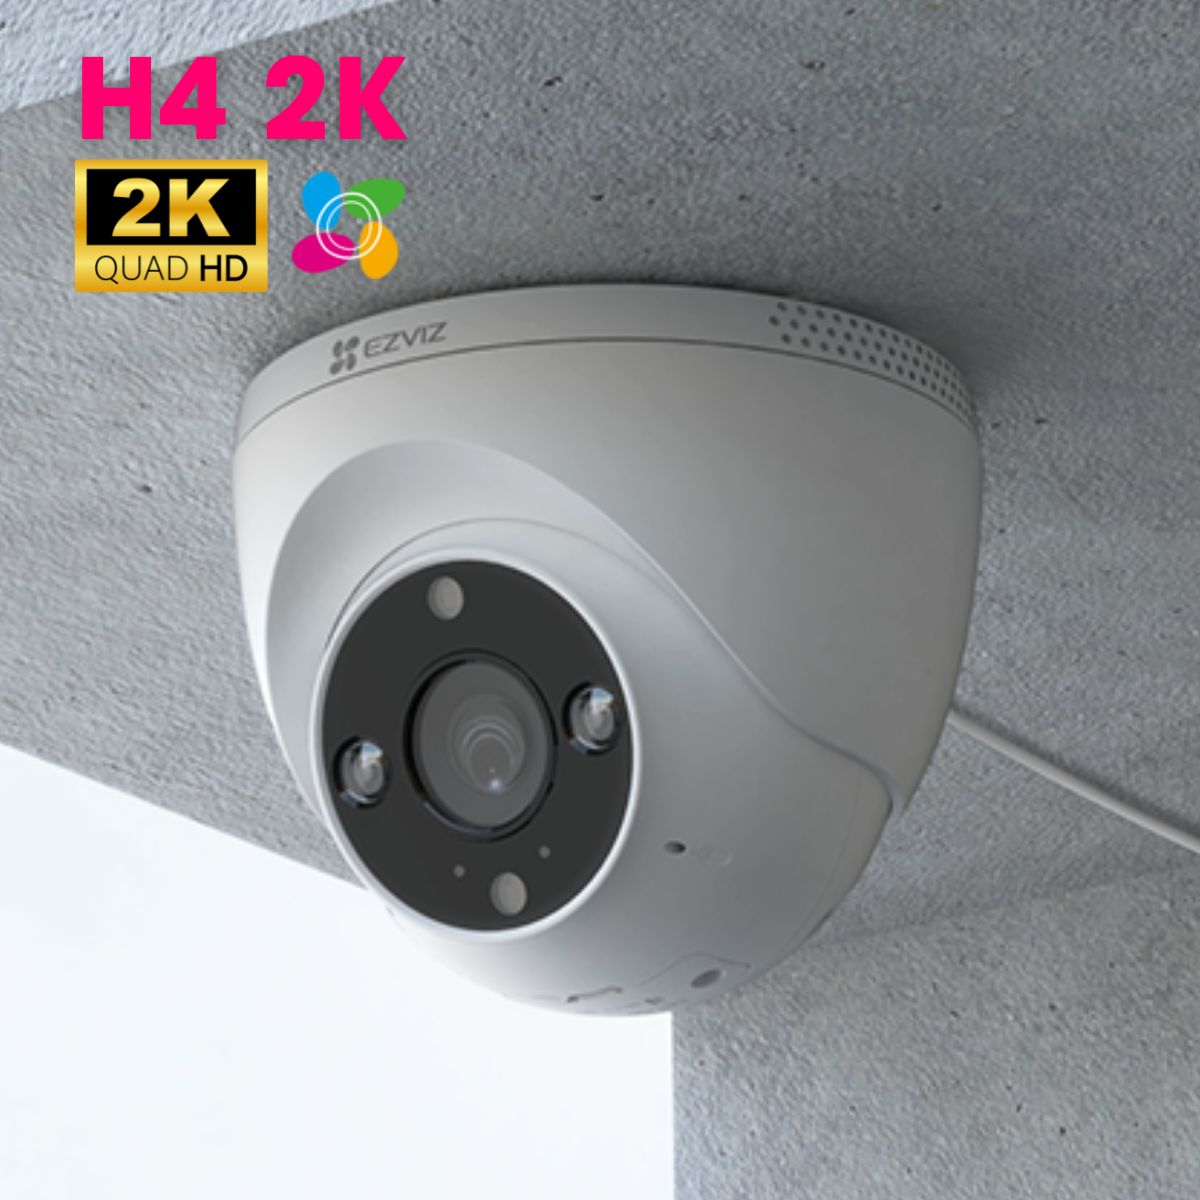 Camera wifi trong nhà Ezviz H4 2K hồng ngoại 30m, phát hiện người và phương tiện